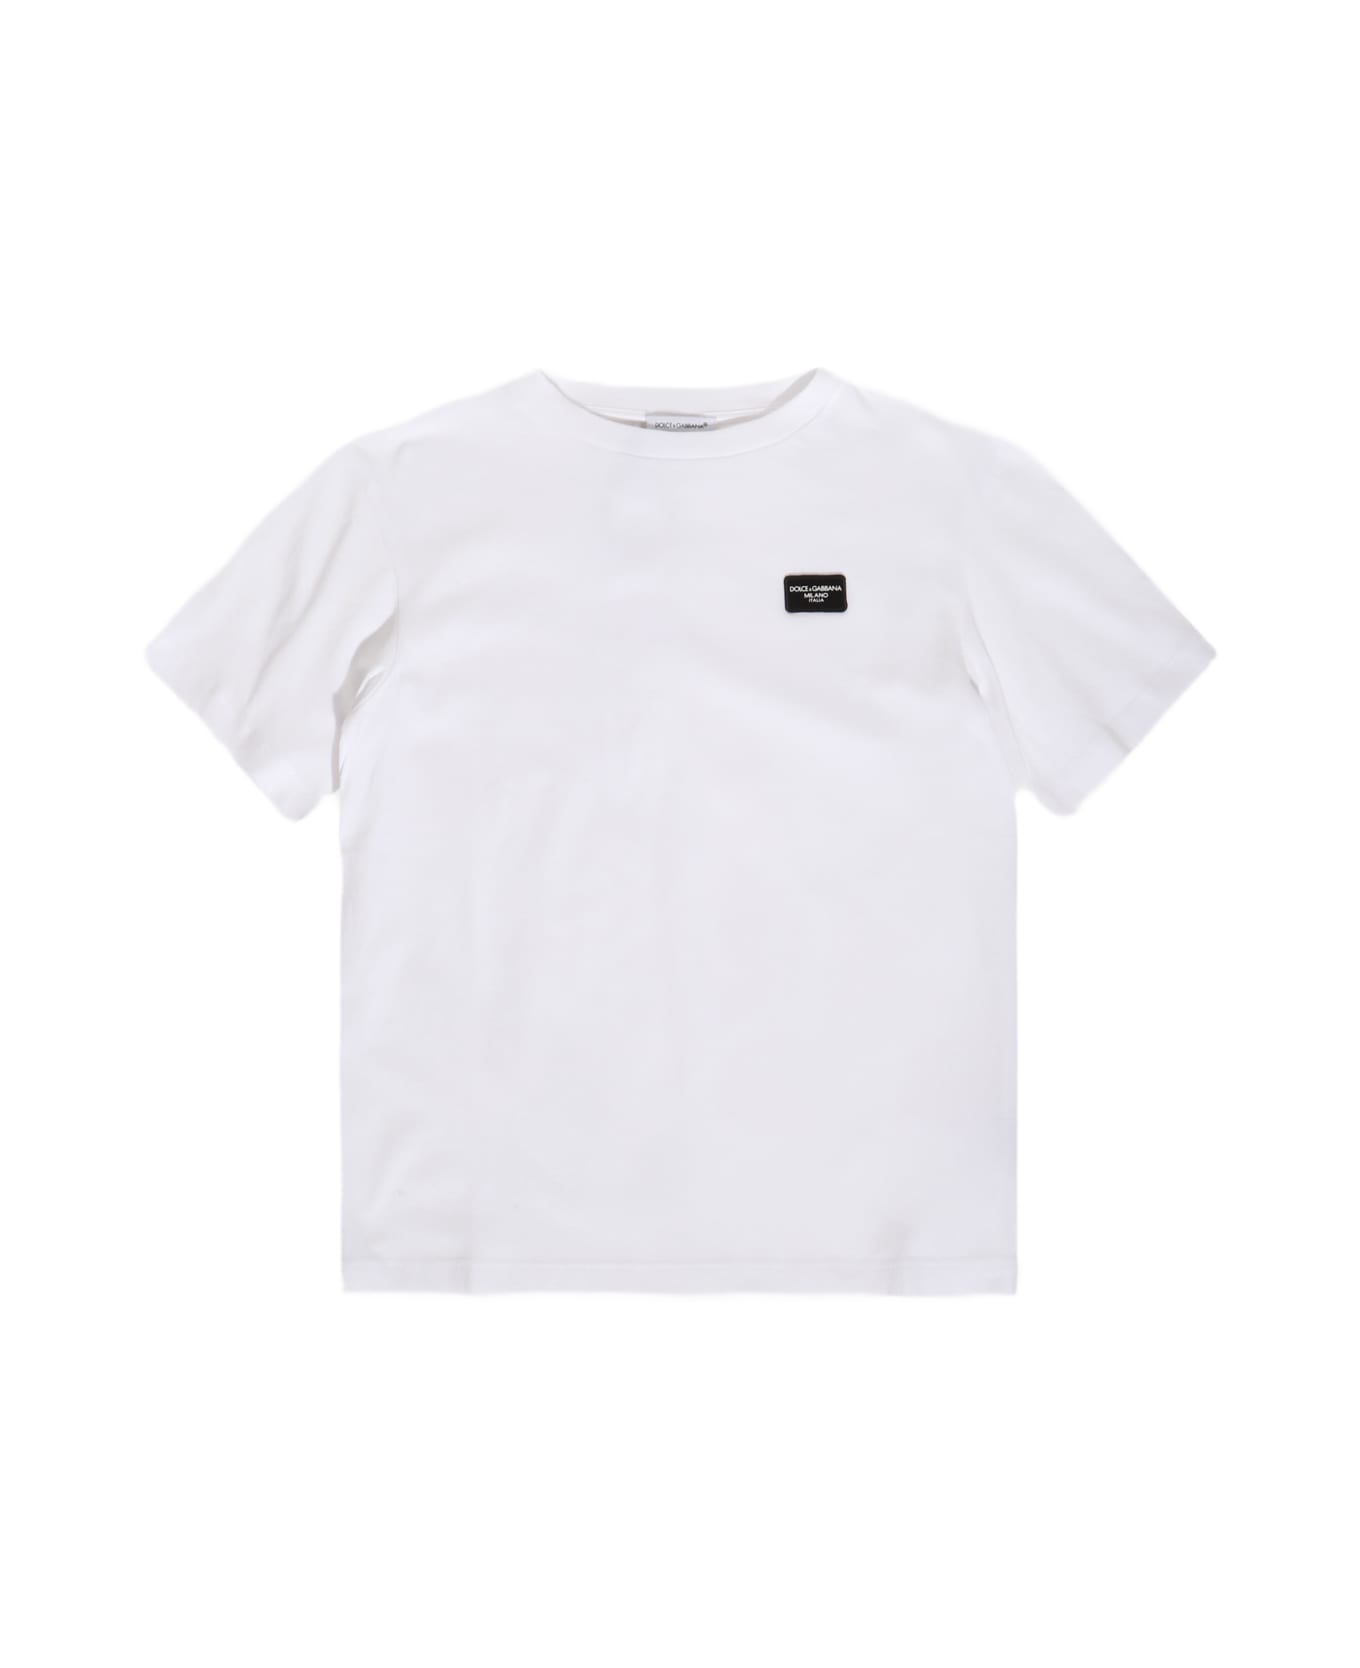 Dolce & Gabbana White Cotton T-shirt - White